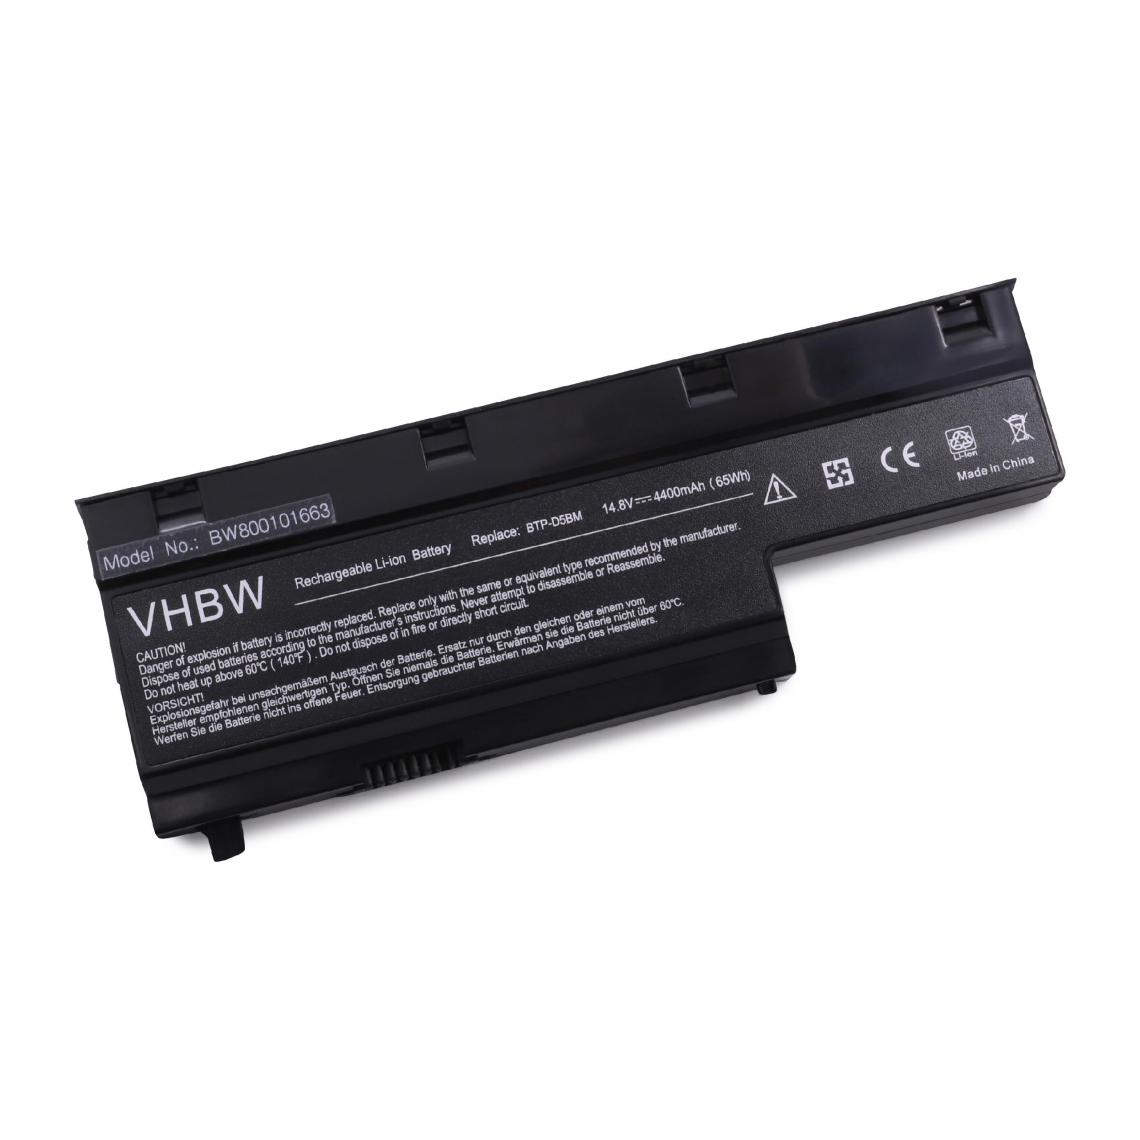 Vhbw - Batterie Li-Ion 4400mAh 14.4V noire pour ordinateur portable MEDION P7614 P 7614, E7211 E 7211, remplace le modèle 40029779 - Batterie PC Portable